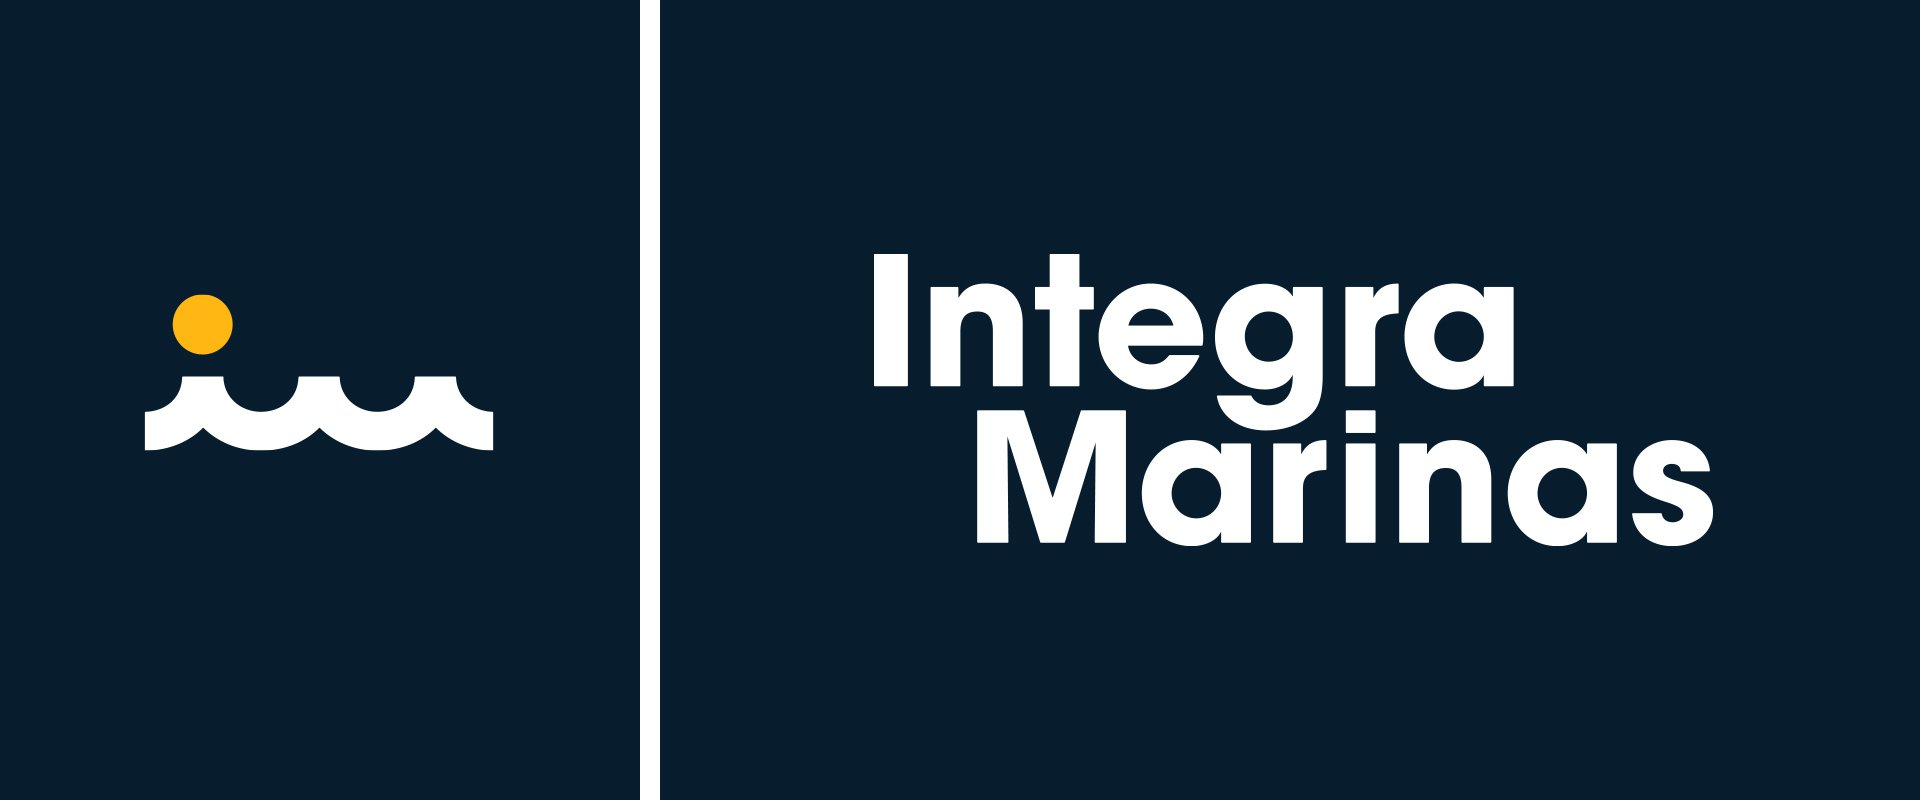 Integra Marina Logo Mark and Tag Line